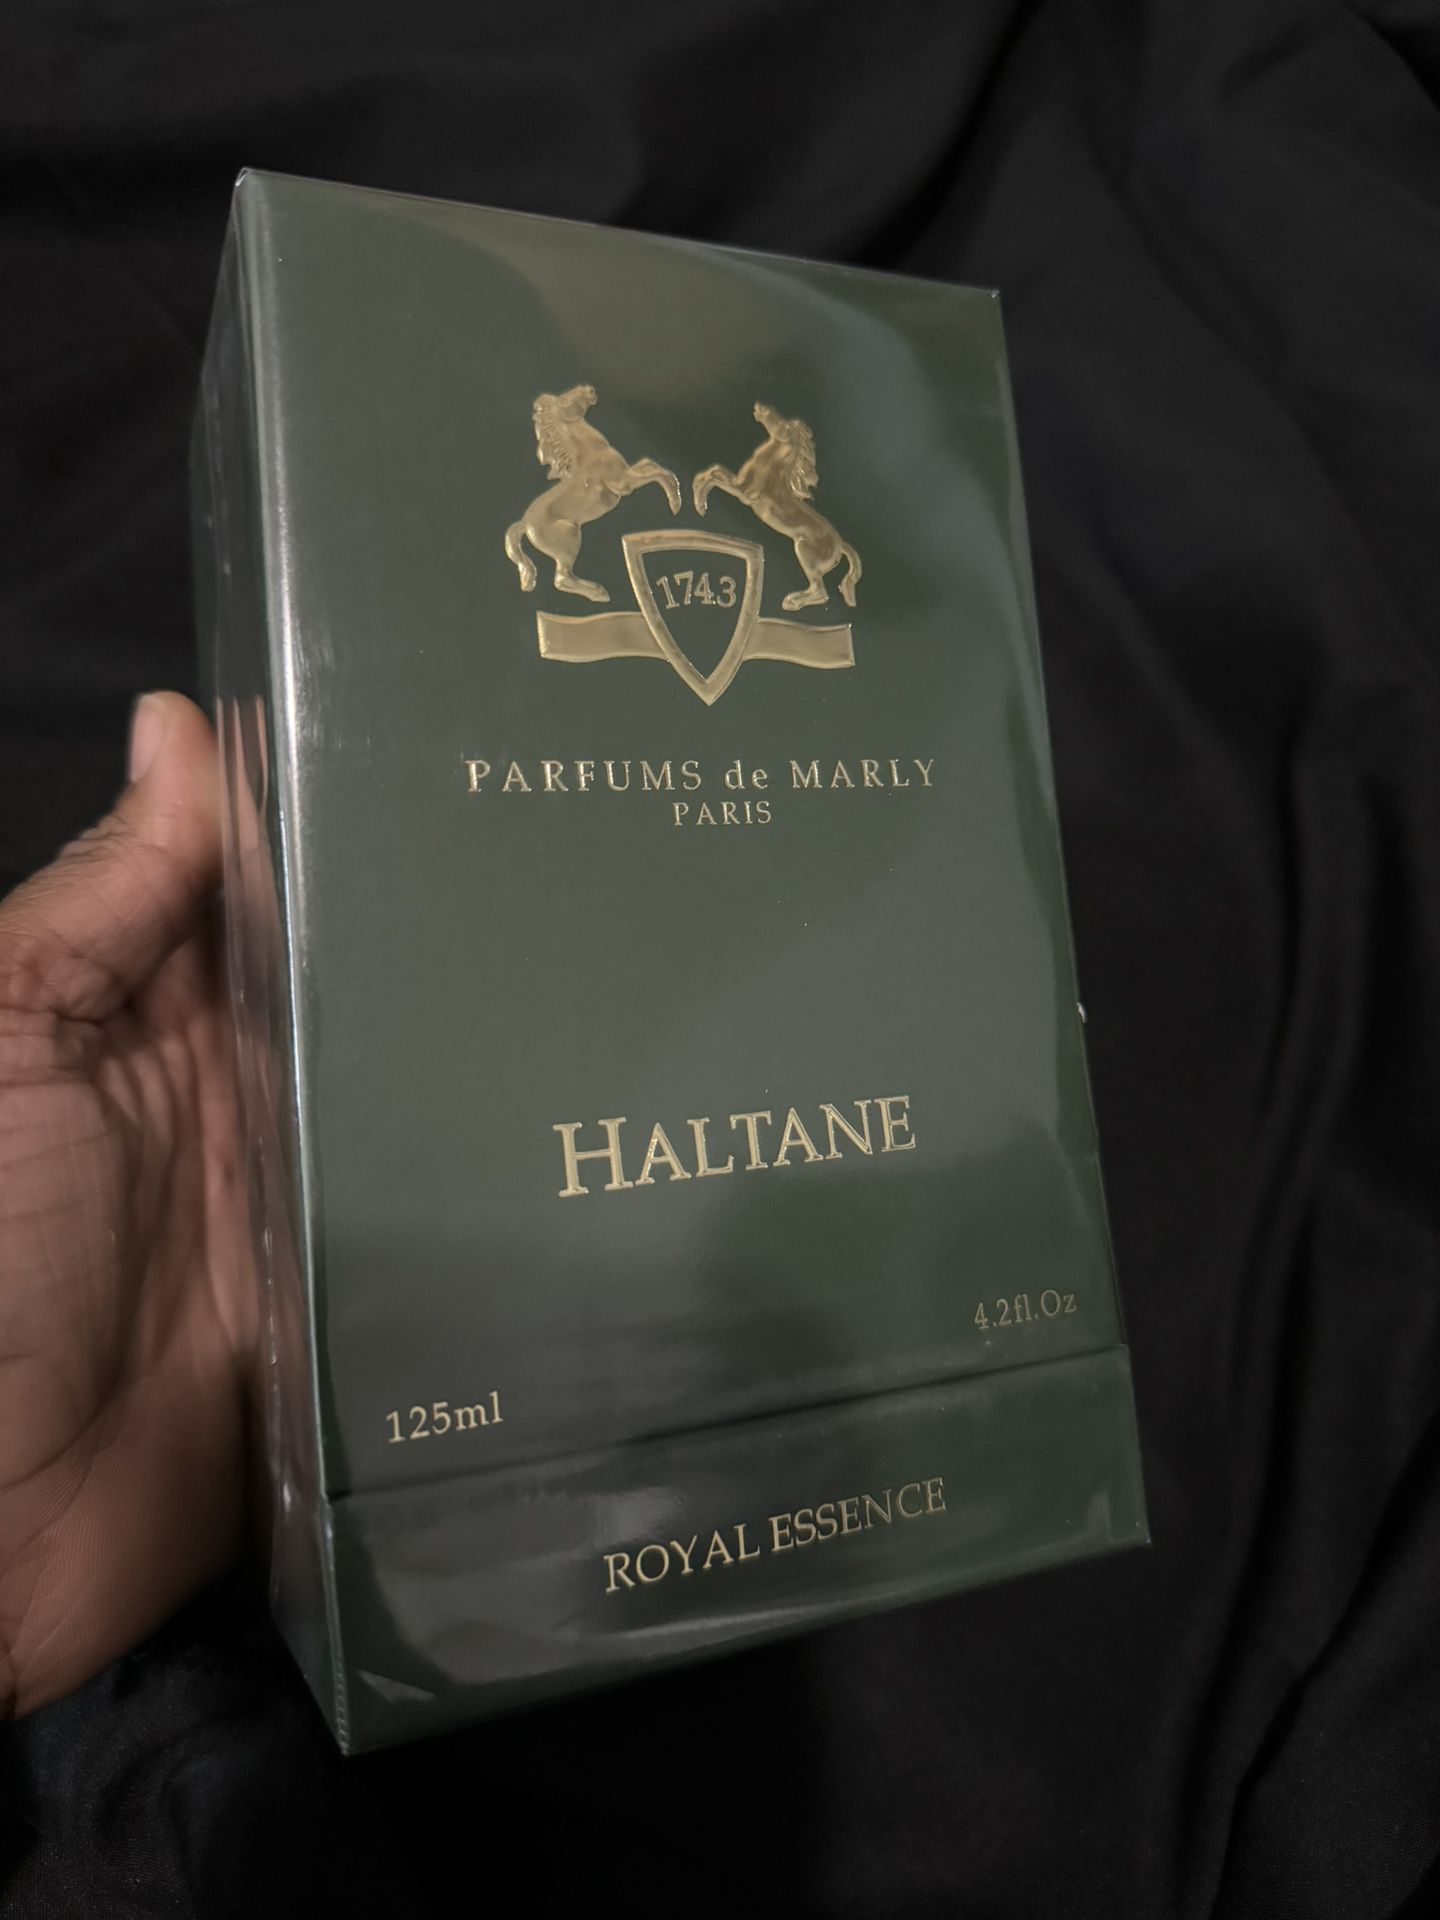 HALTANE PARFUMES DE MARLEY